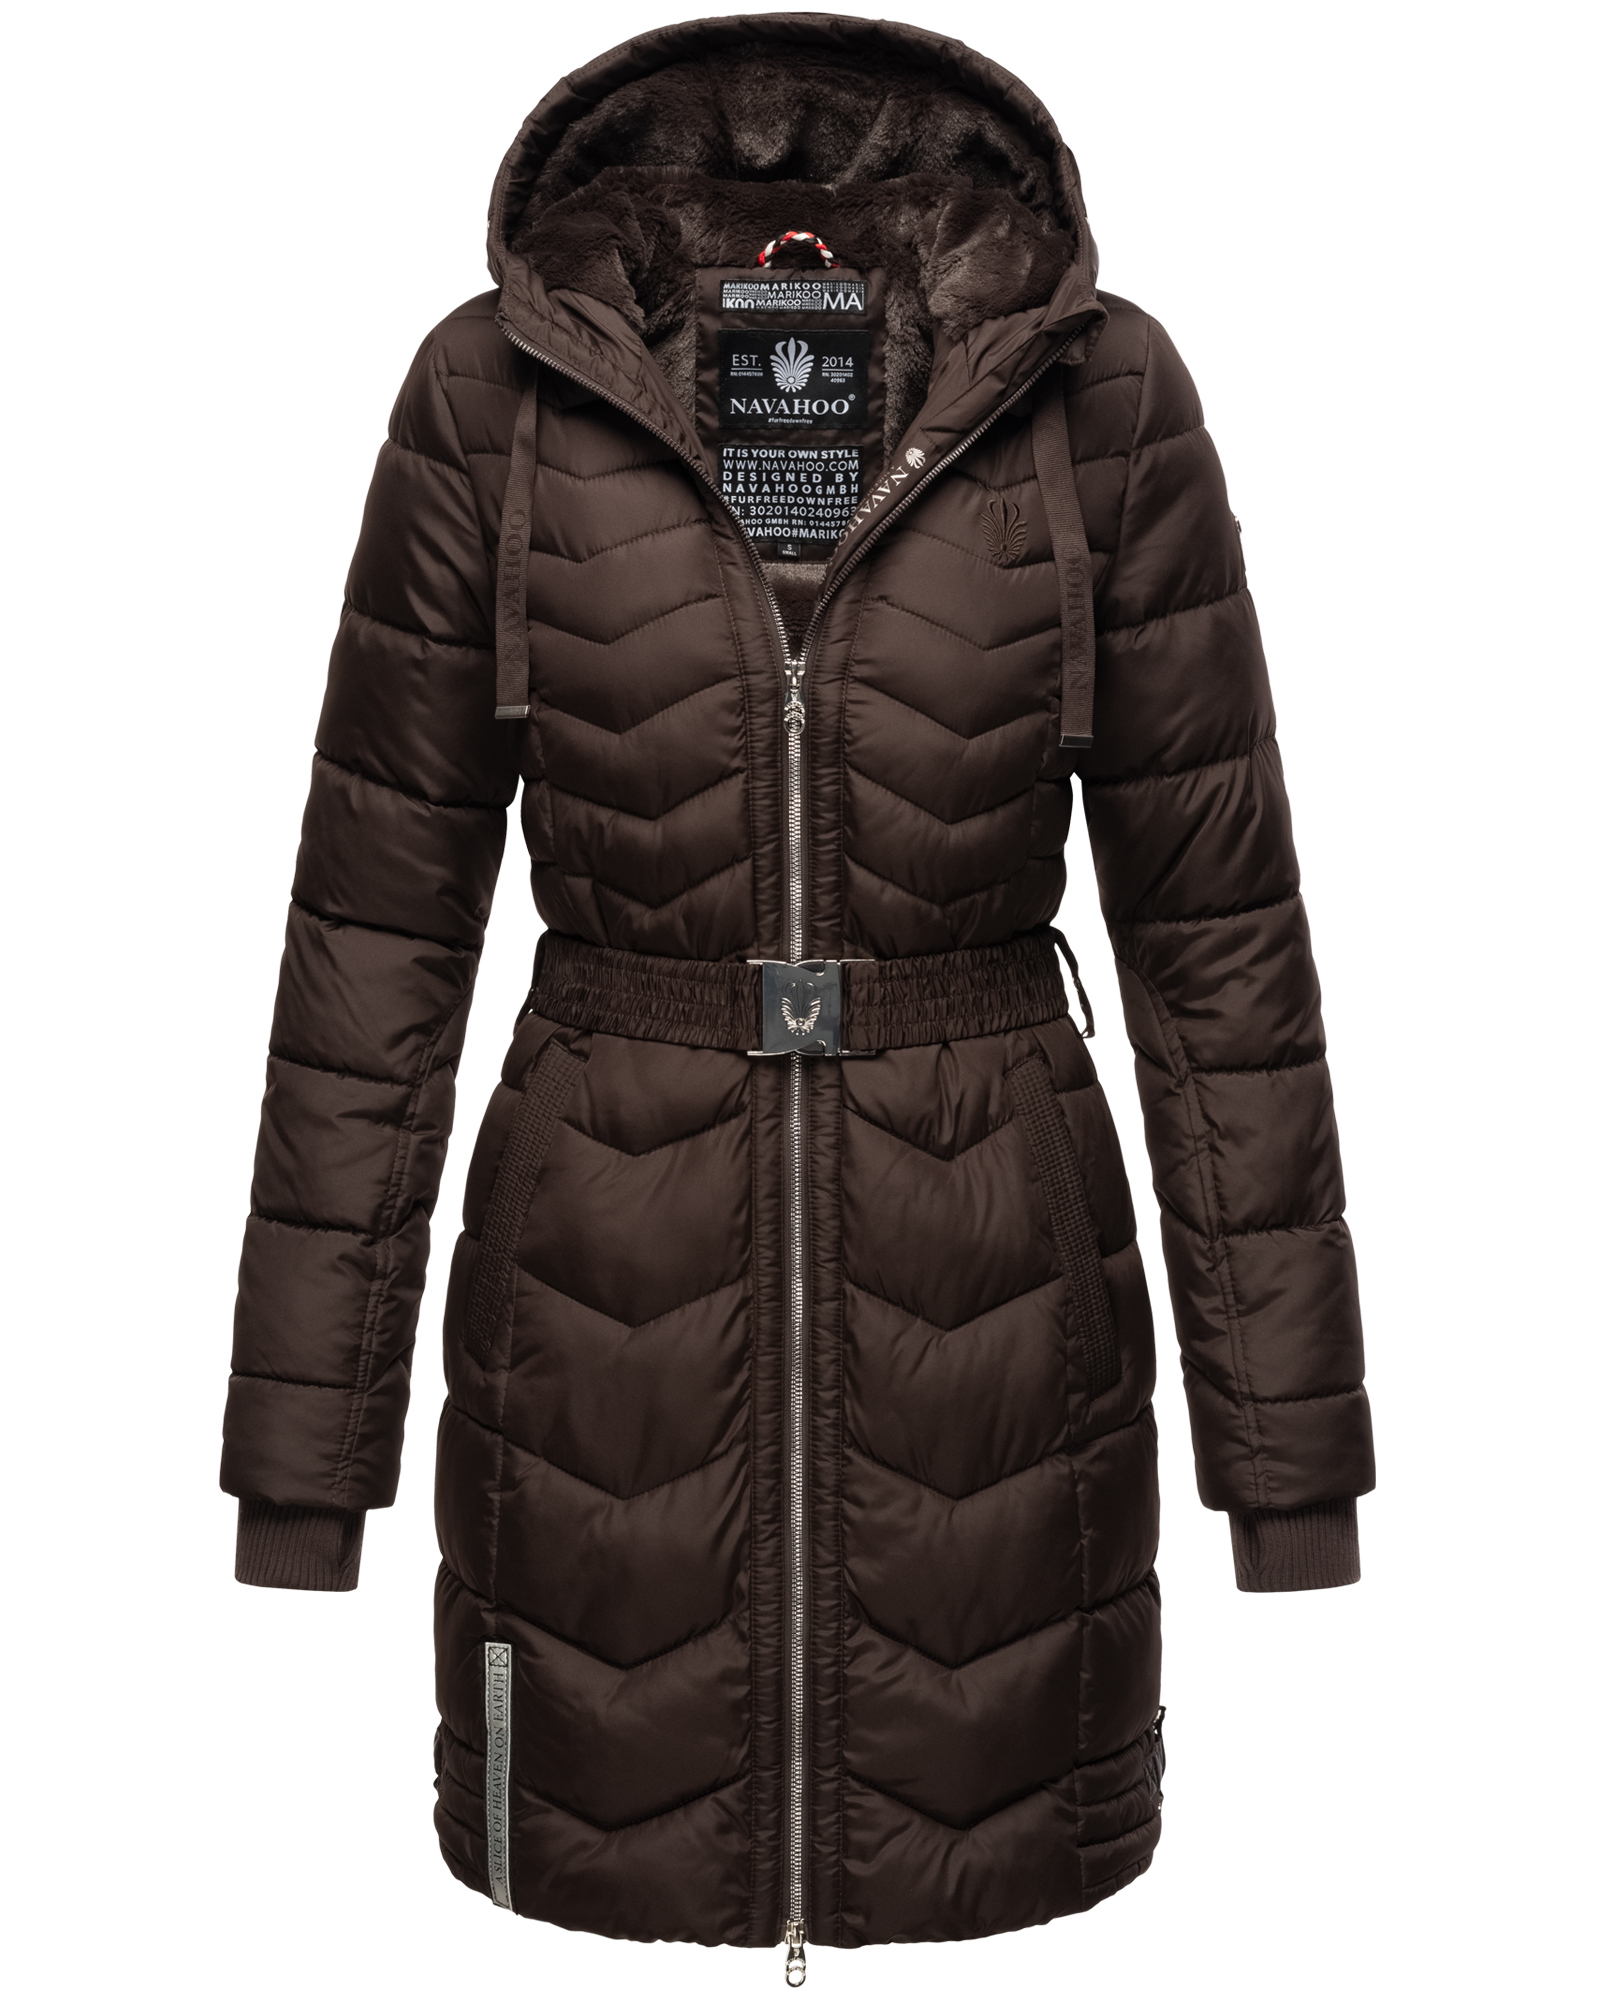 Dámský zimní prošívaný kabát Alpenveilchen Navahoo - CHOCOLATE Velikost: XL